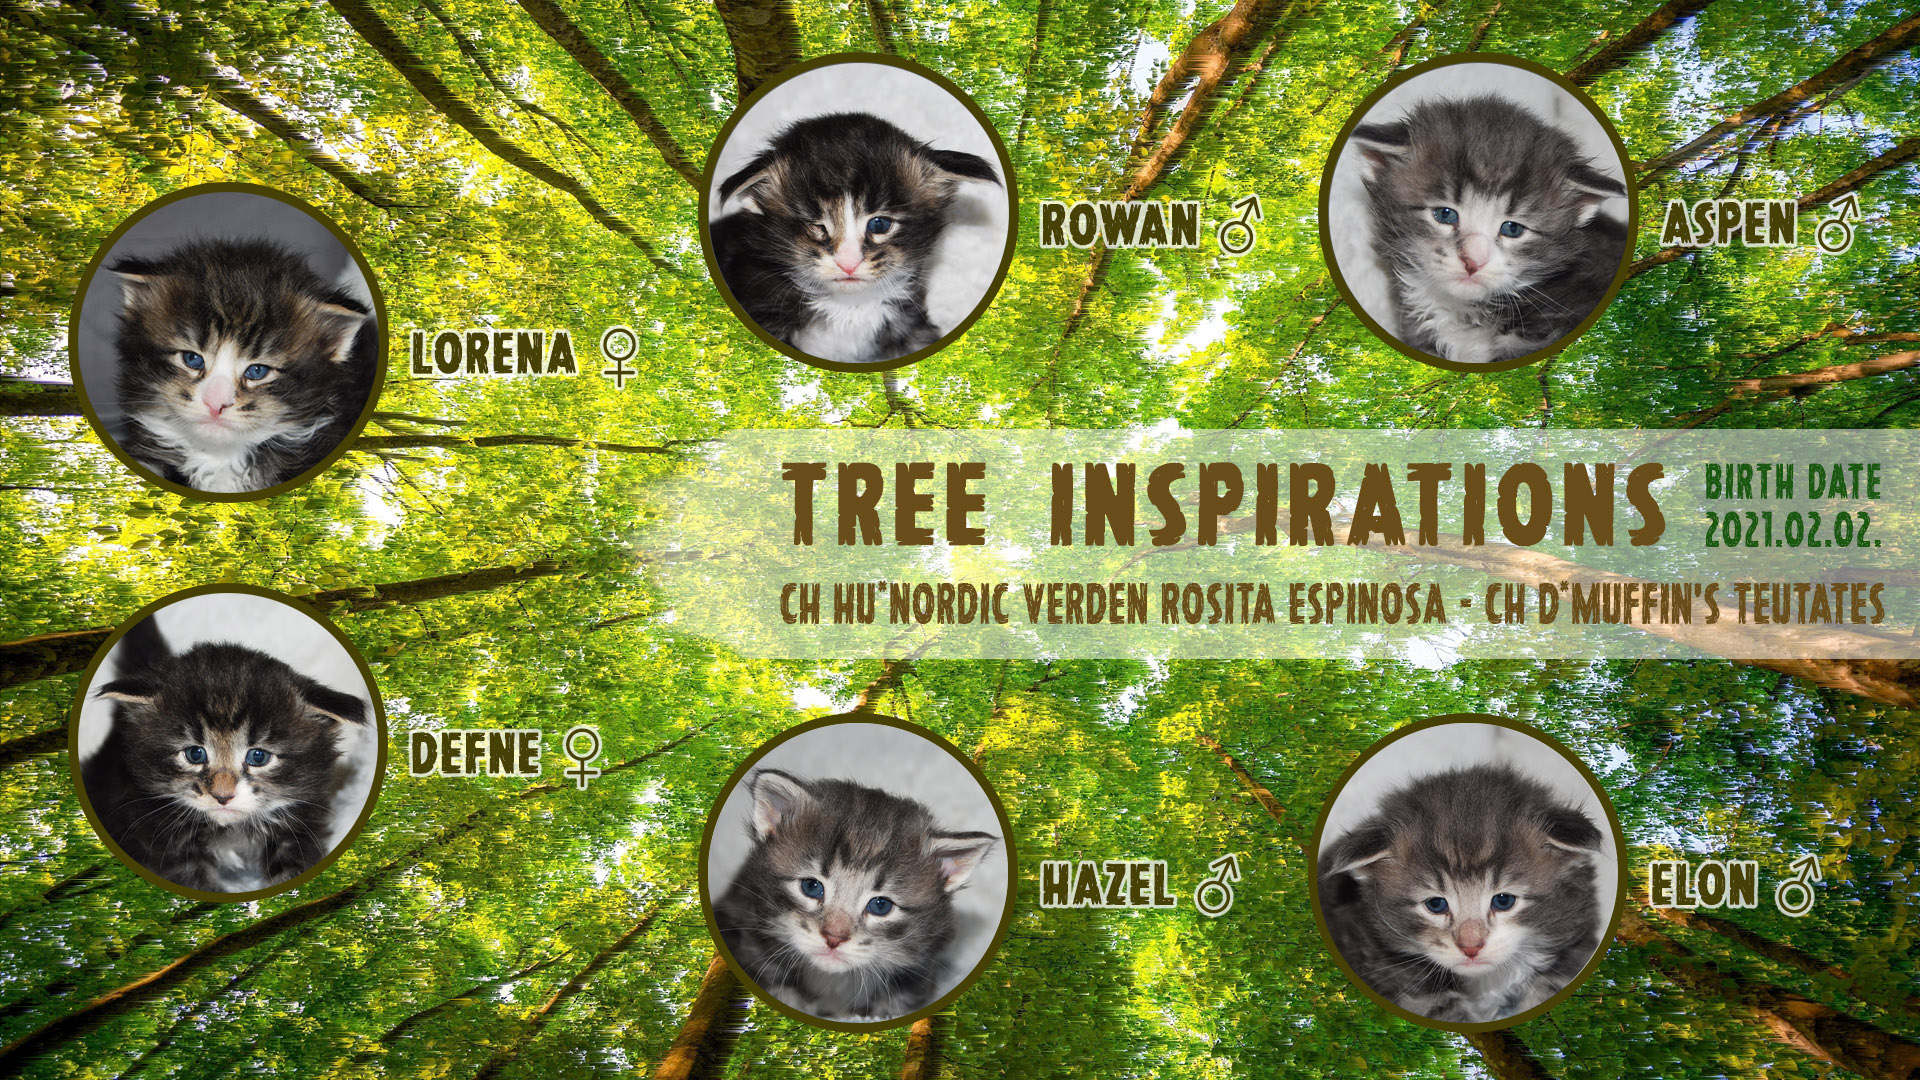 Nordic Verden - norvég erdei macska tenyészet - Tree Inspirations alom